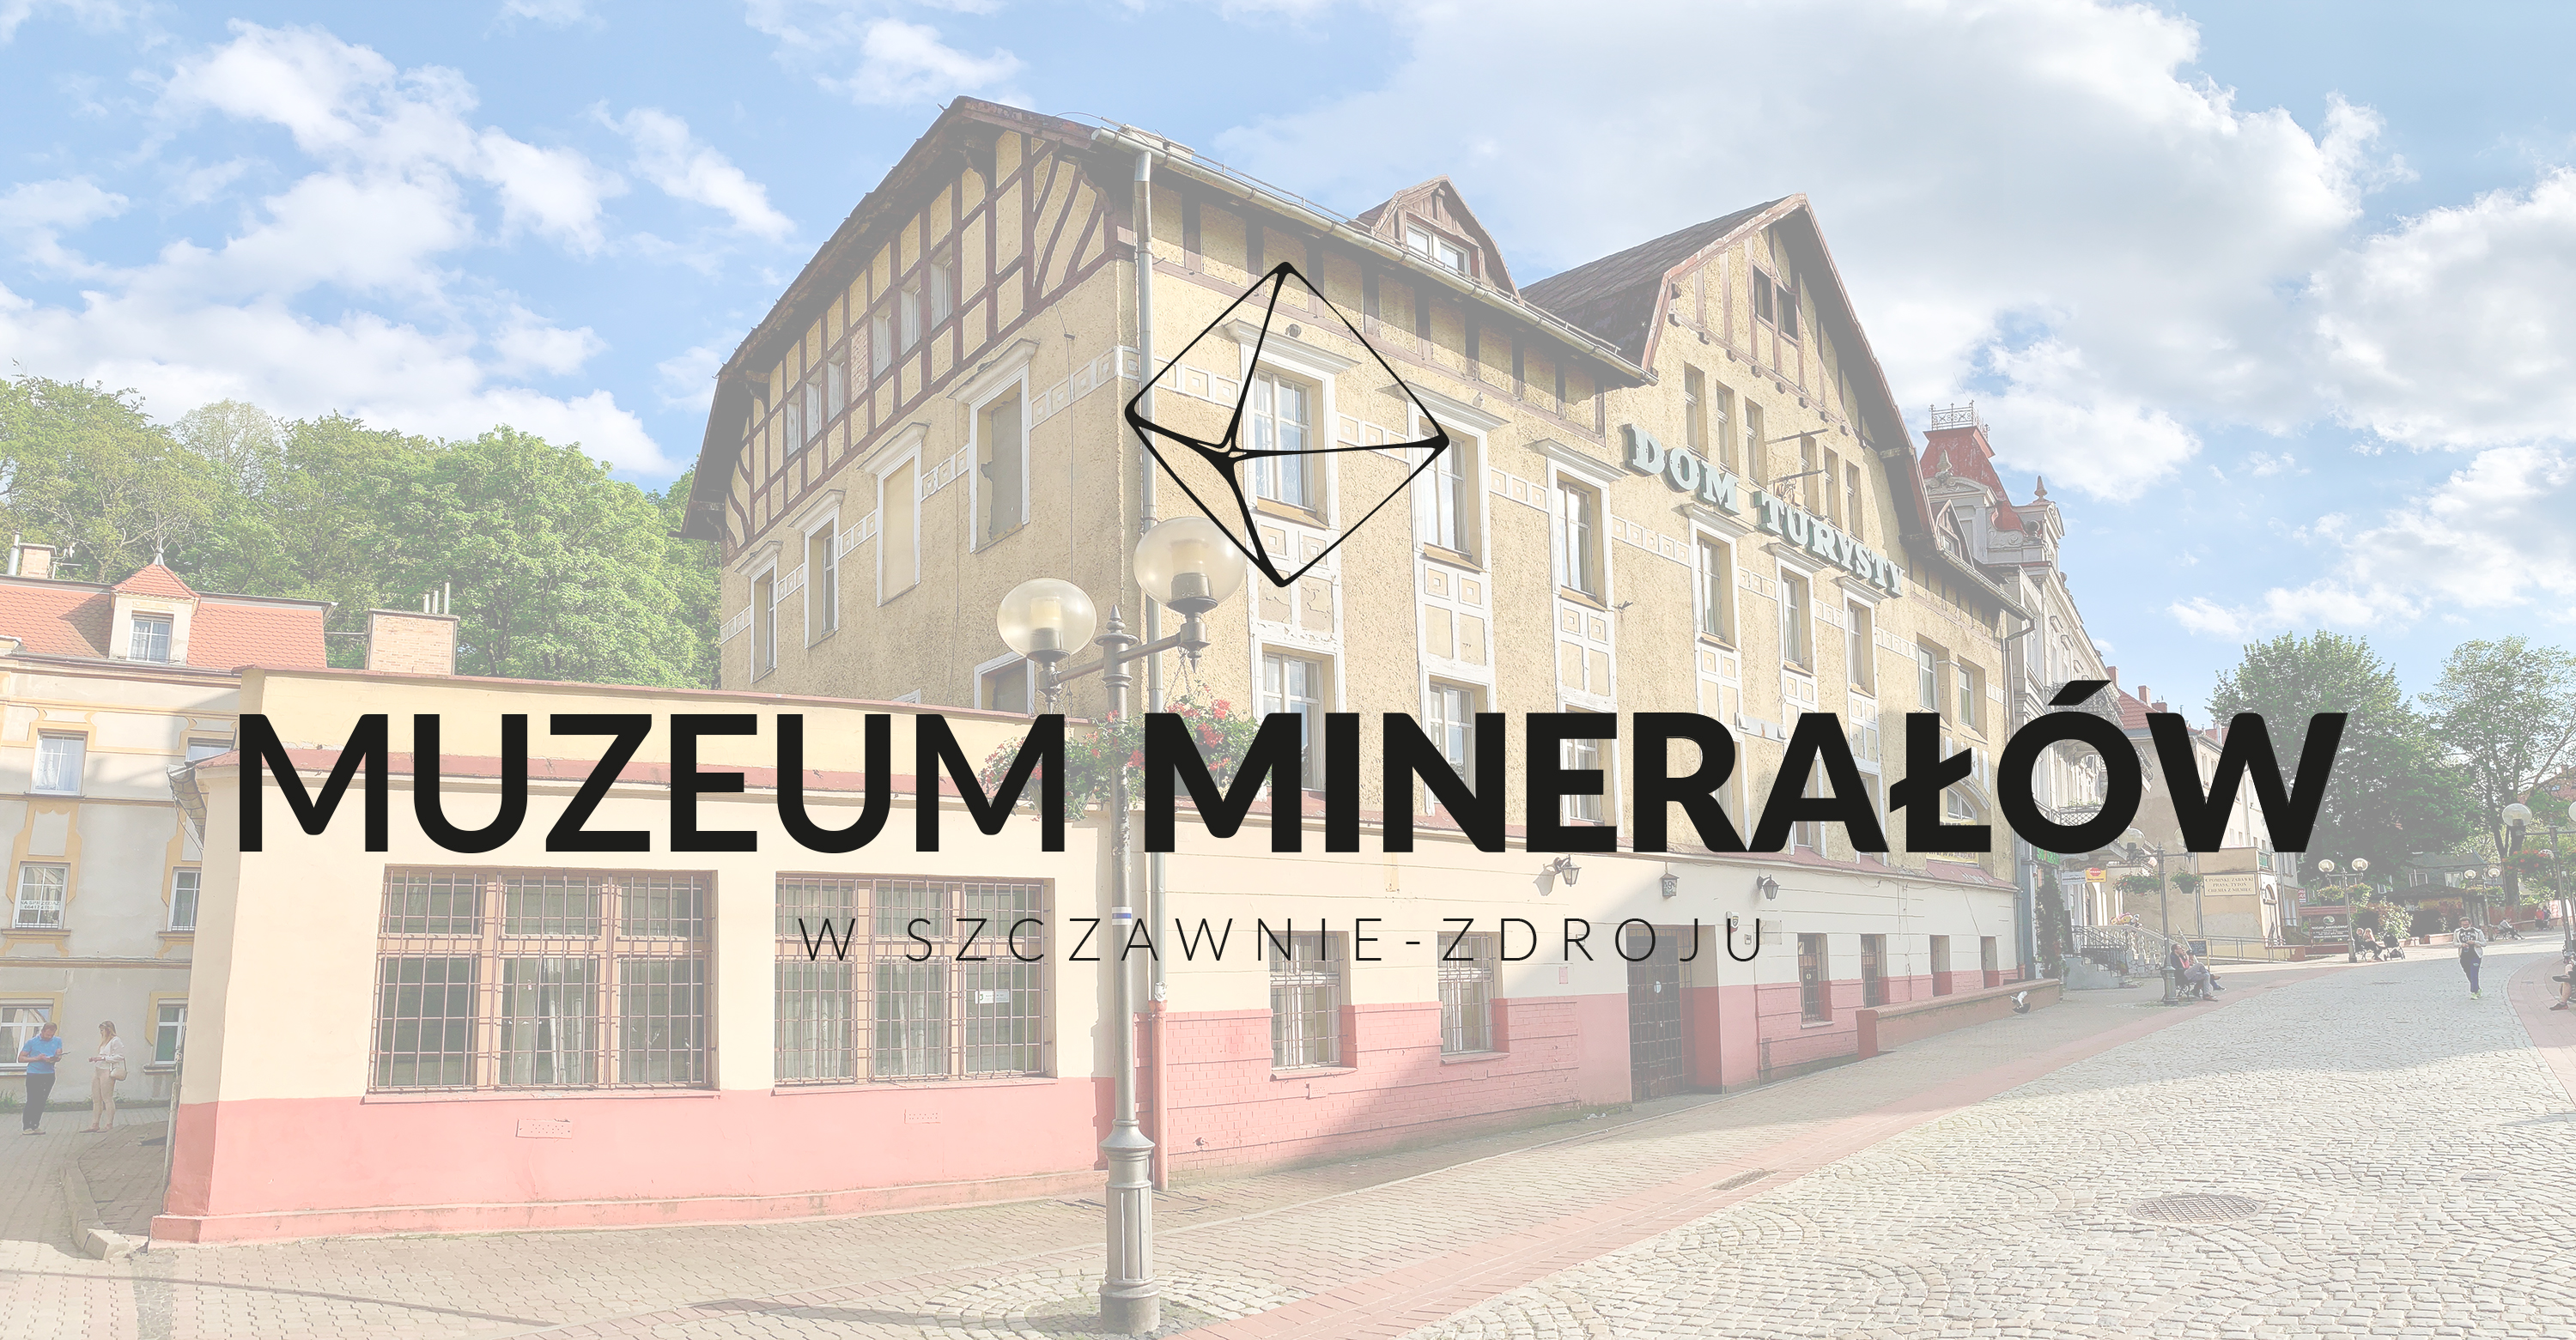 Muzeum Minerałów w Szczawnie-Zdroju